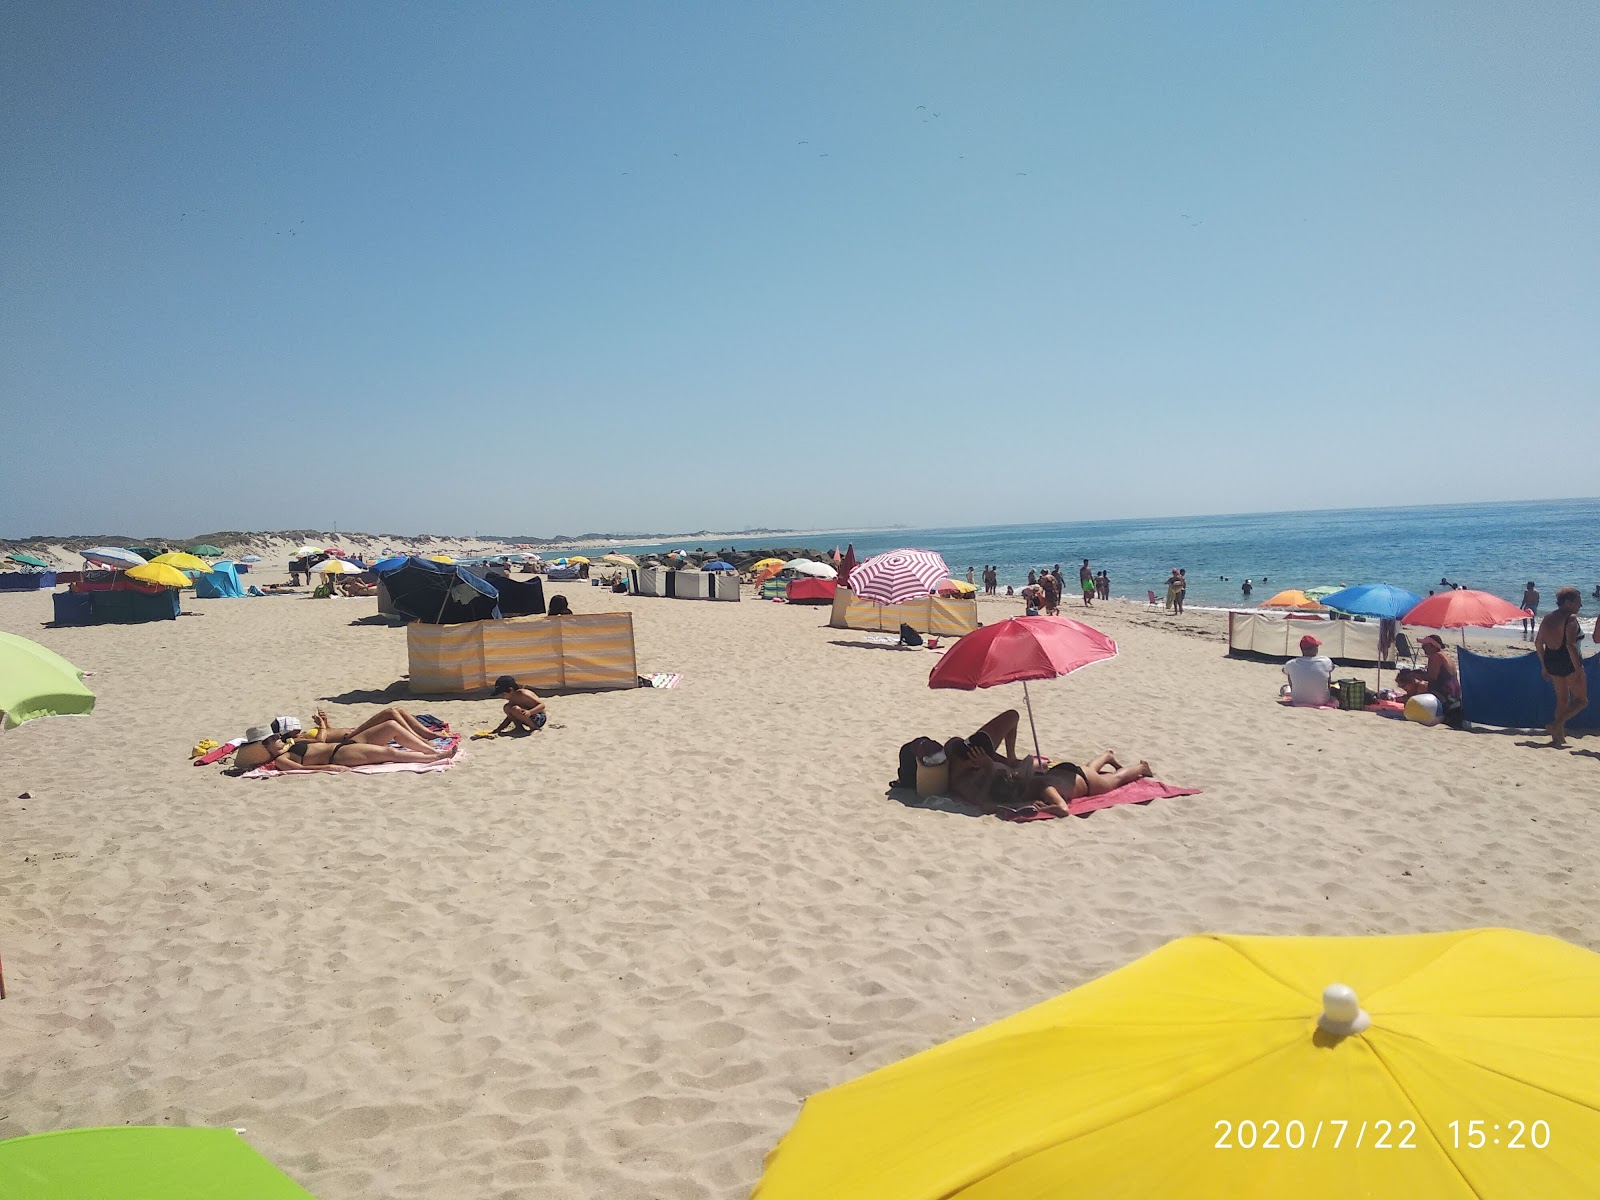 Praia da Apulia'in fotoğrafı çok temiz temizlik seviyesi ile